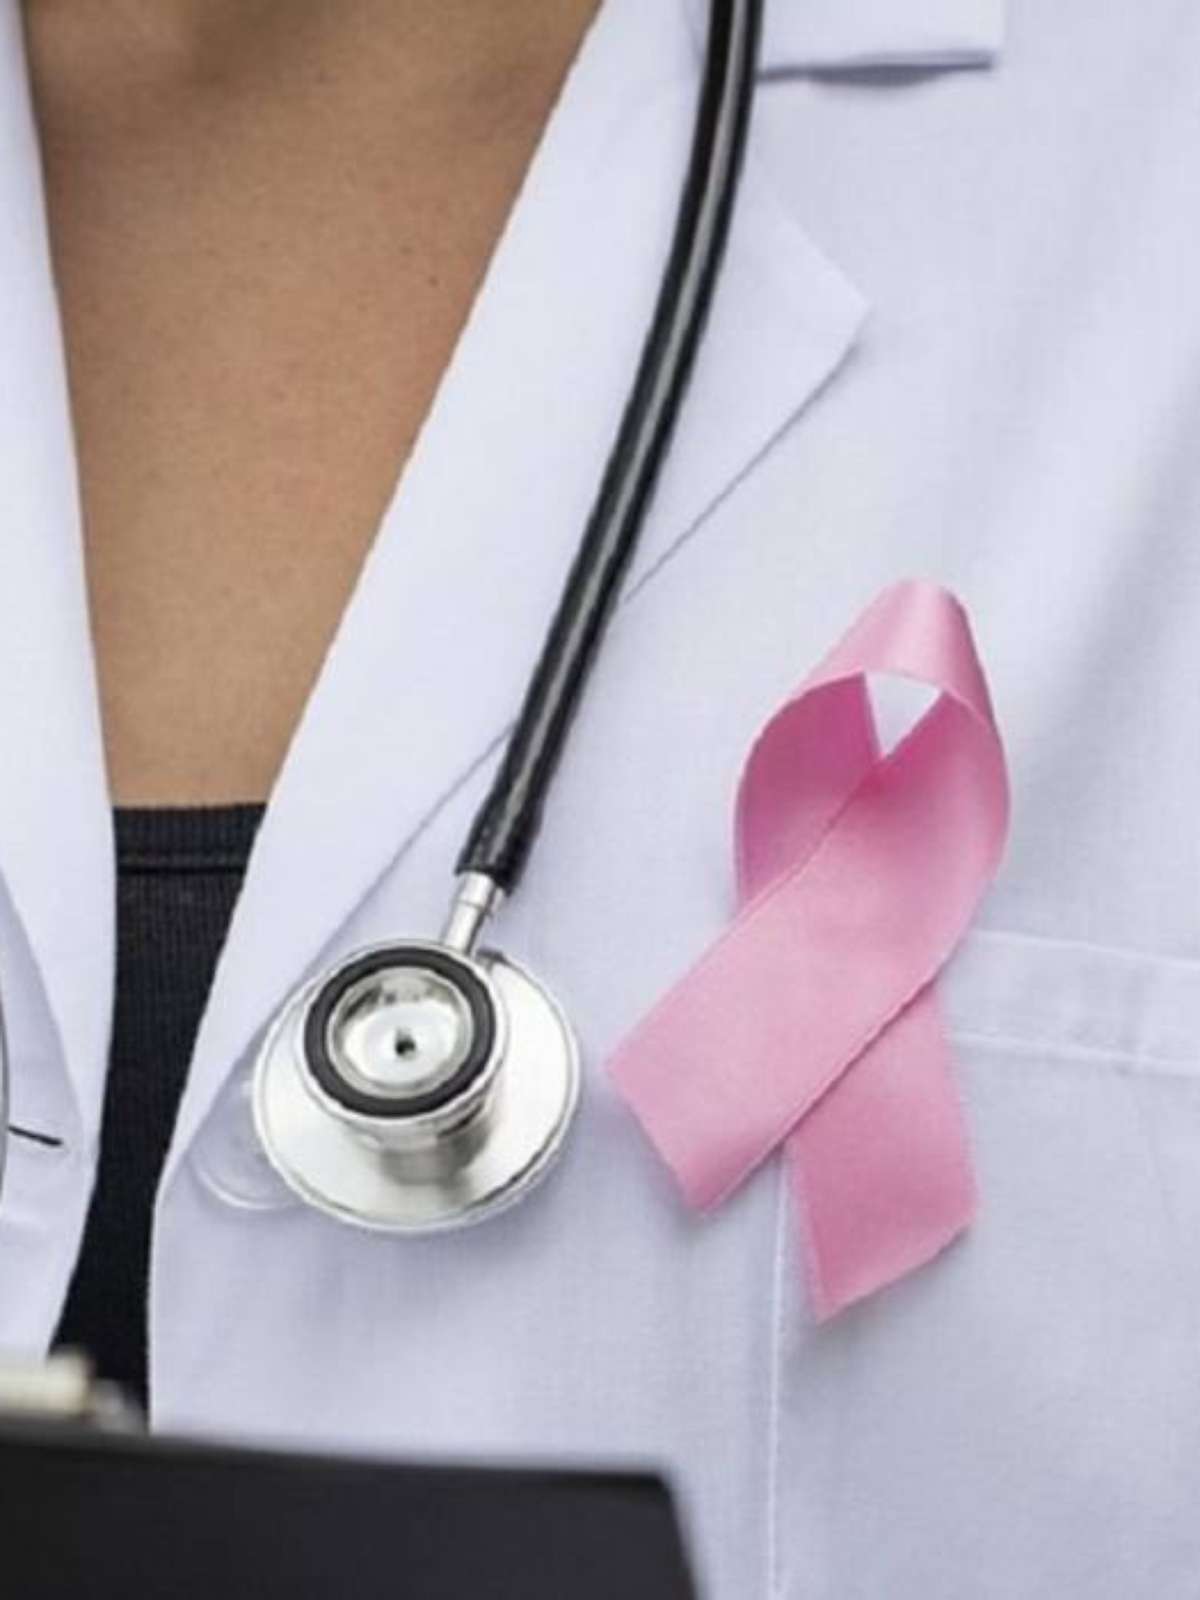 Senado aprova texto para exames de câncer no SUS em 30 dias